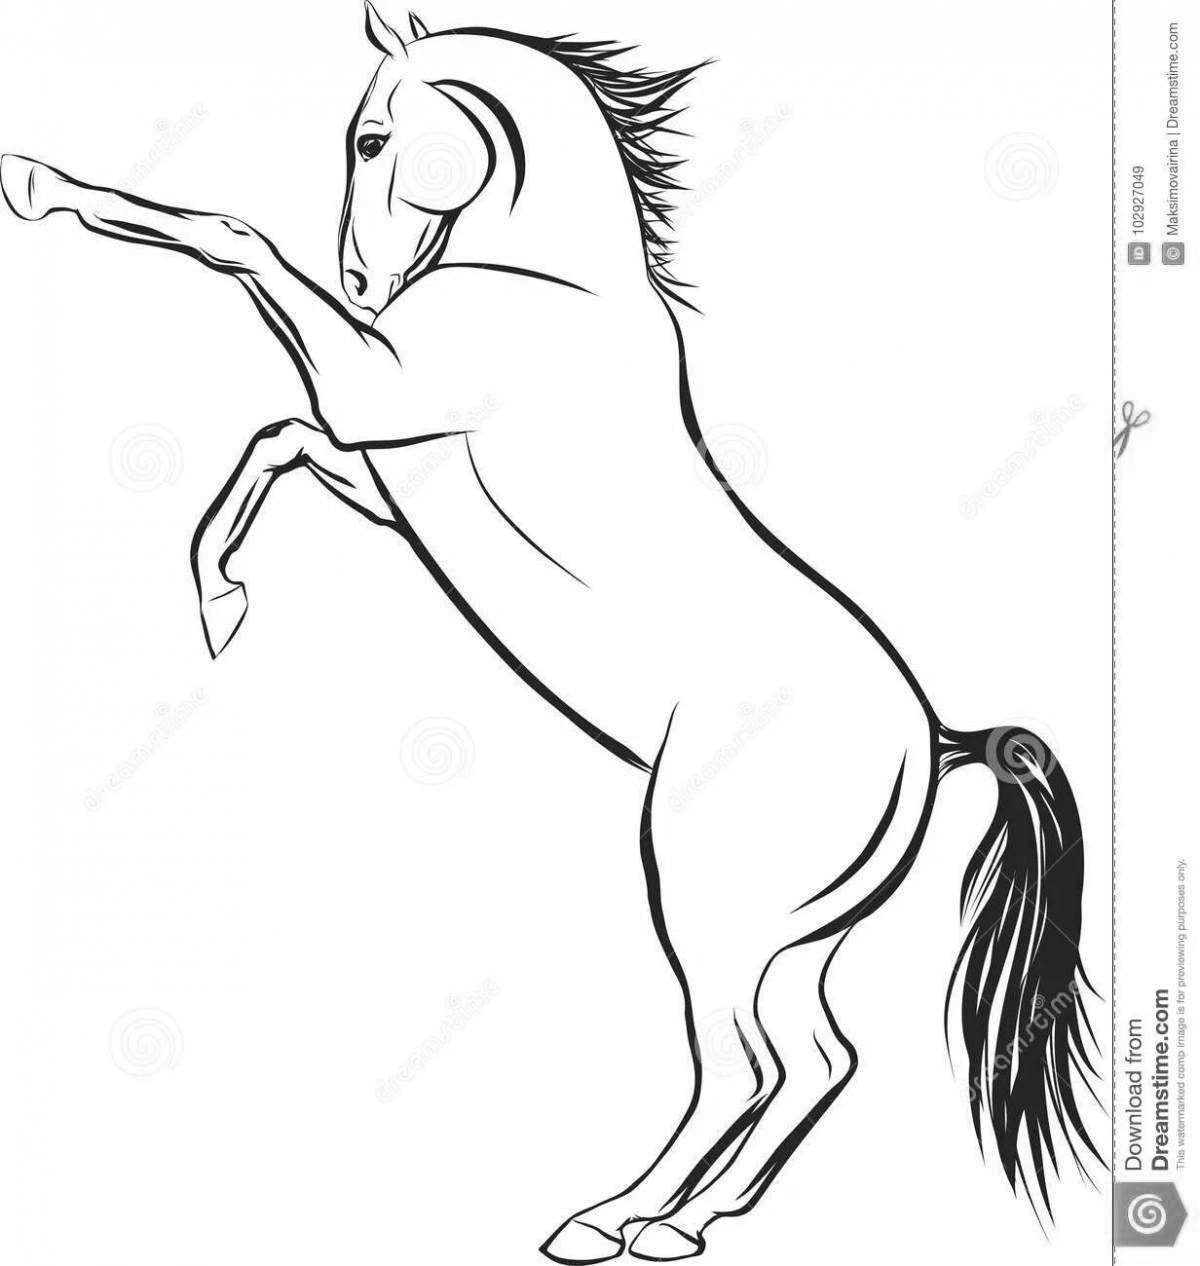 Великолепная страница раскраски вздыбленной лошади